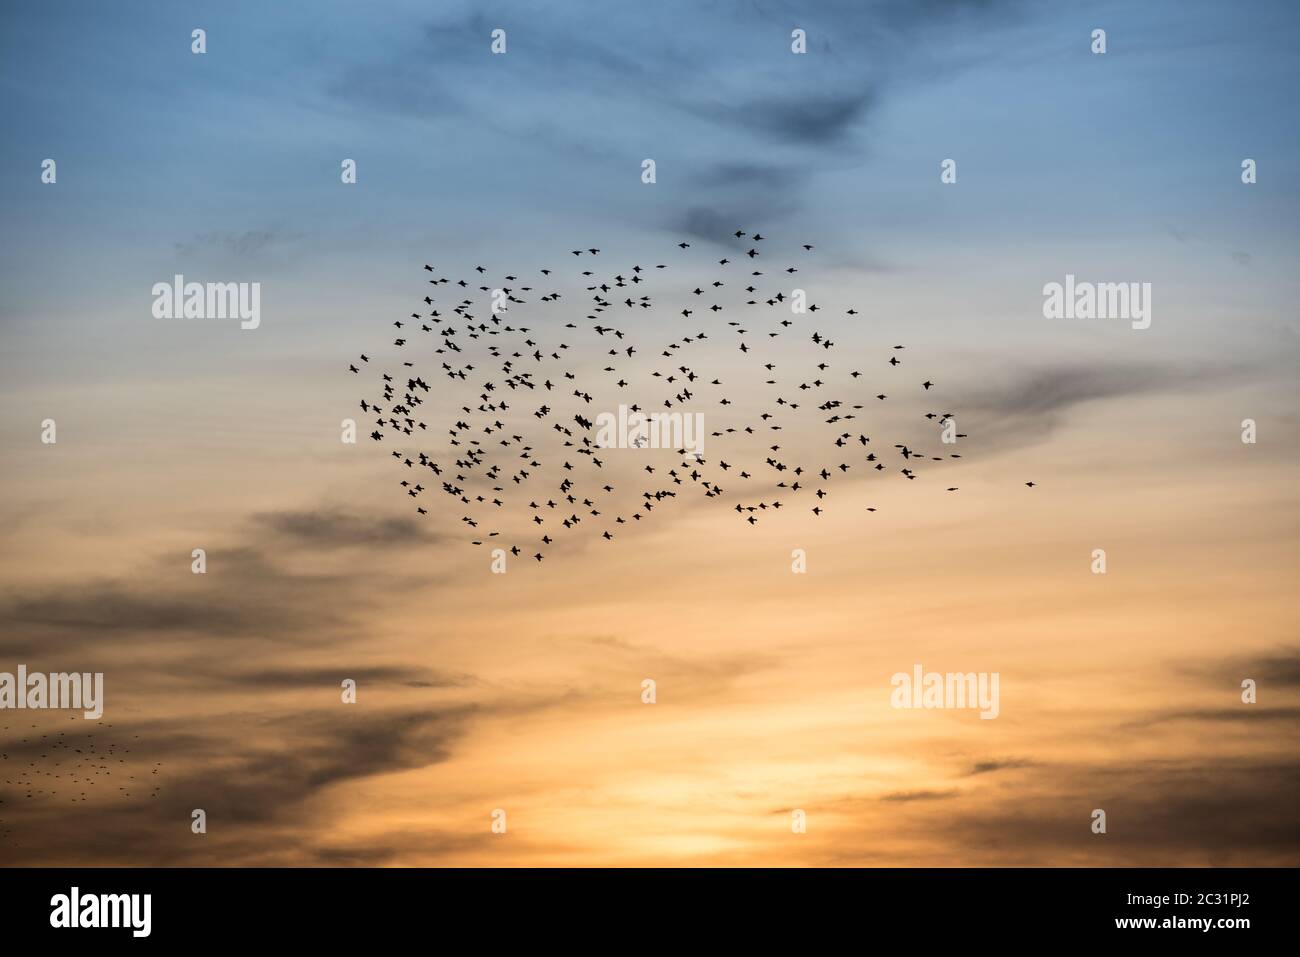 swarm of wild birds in autumn sun Stock Photo